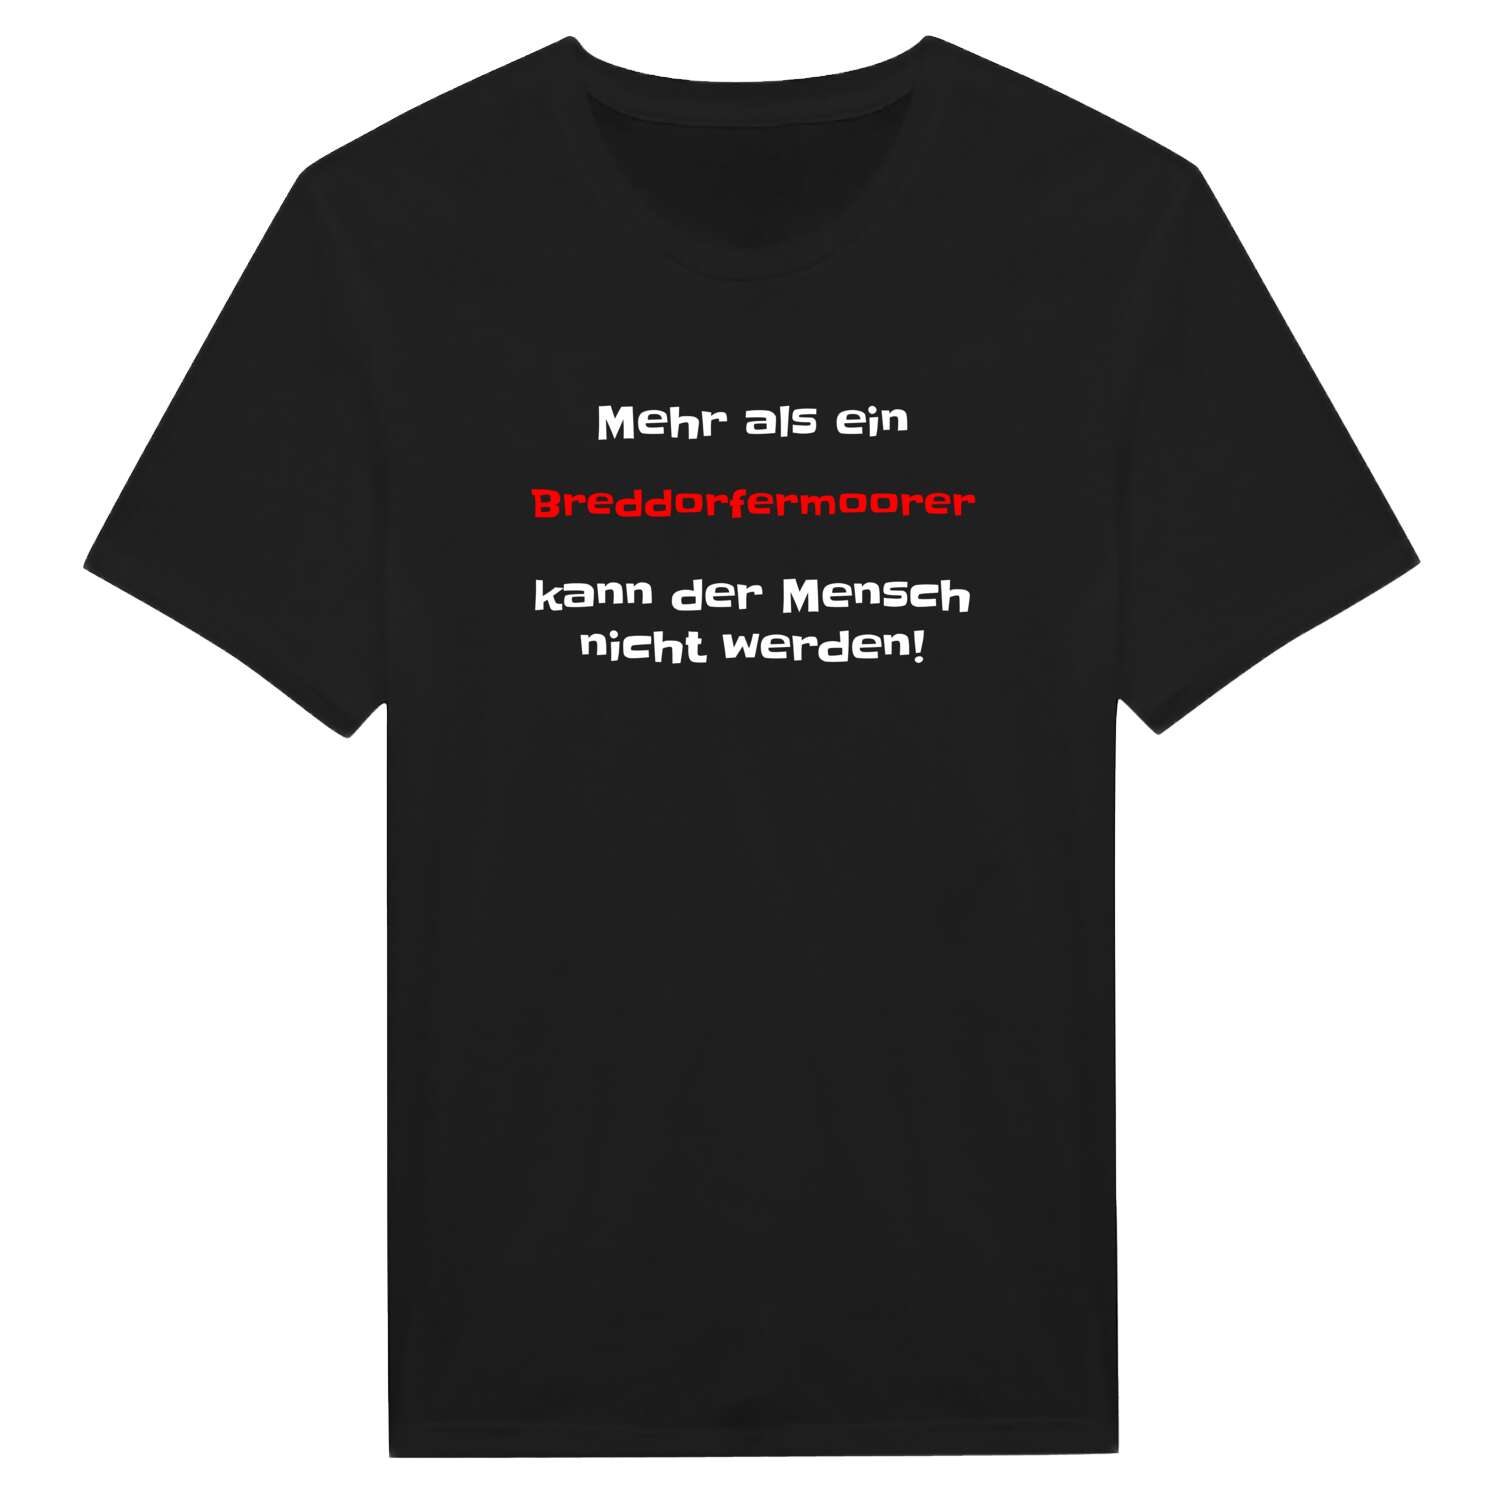 Breddorfermoor T-Shirt »Mehr als ein«